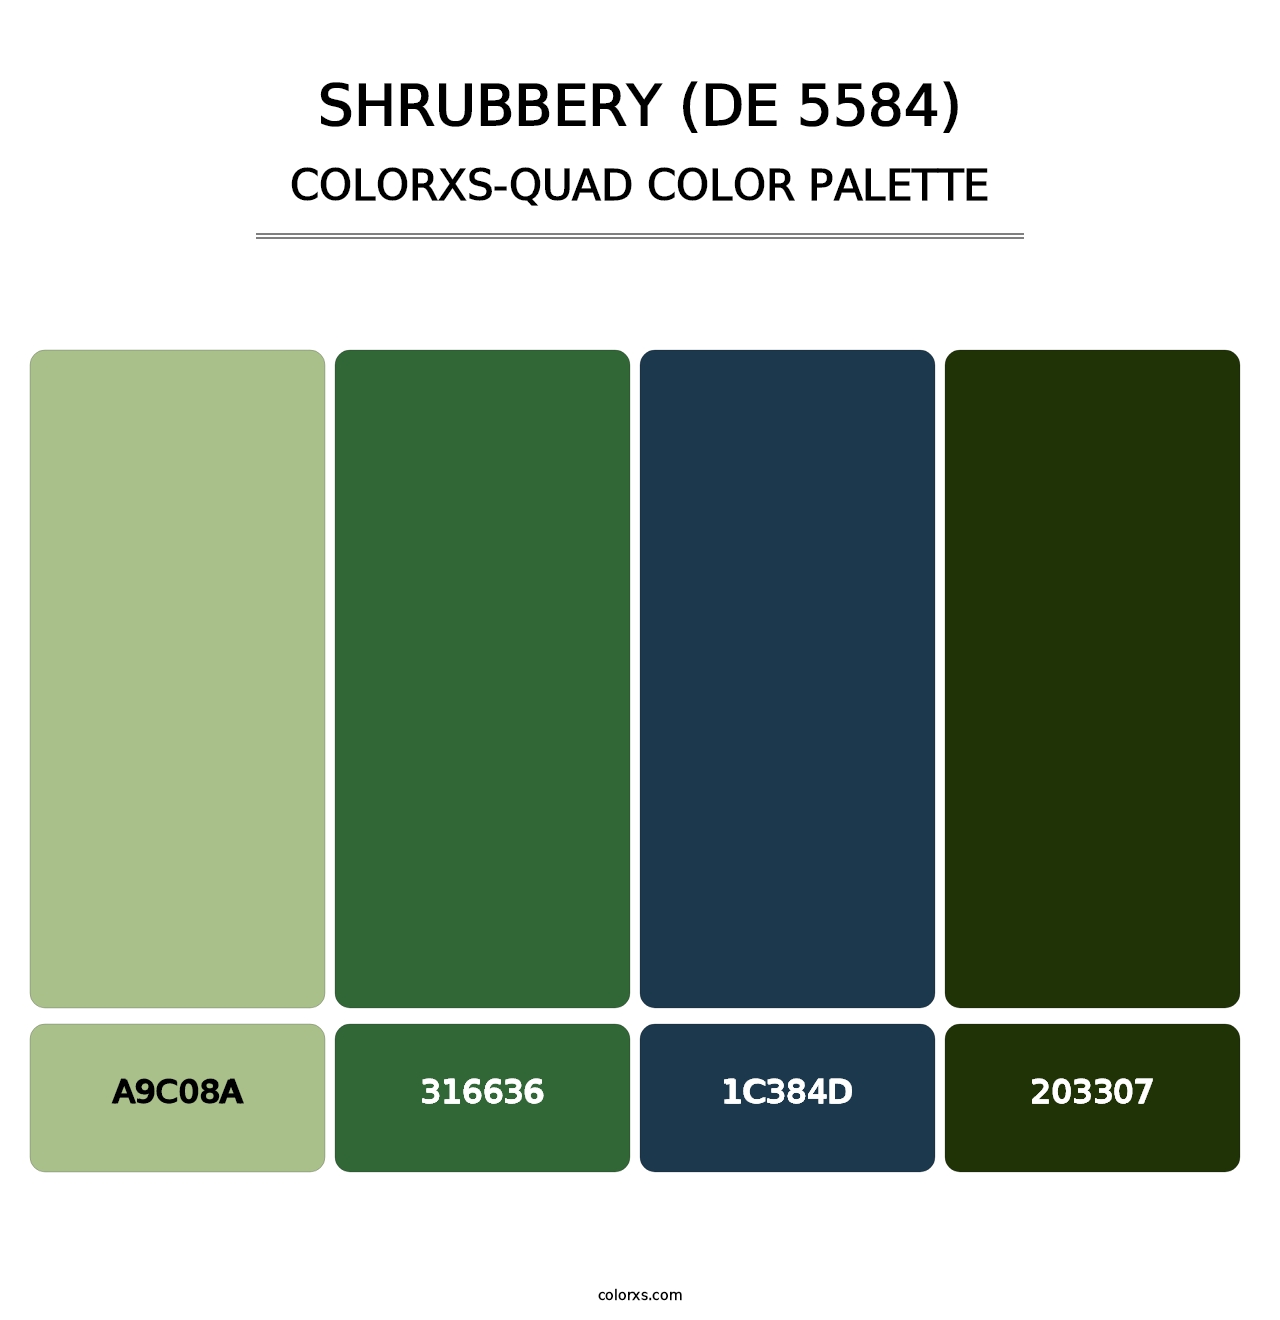 Shrubbery (DE 5584) - Colorxs Quad Palette